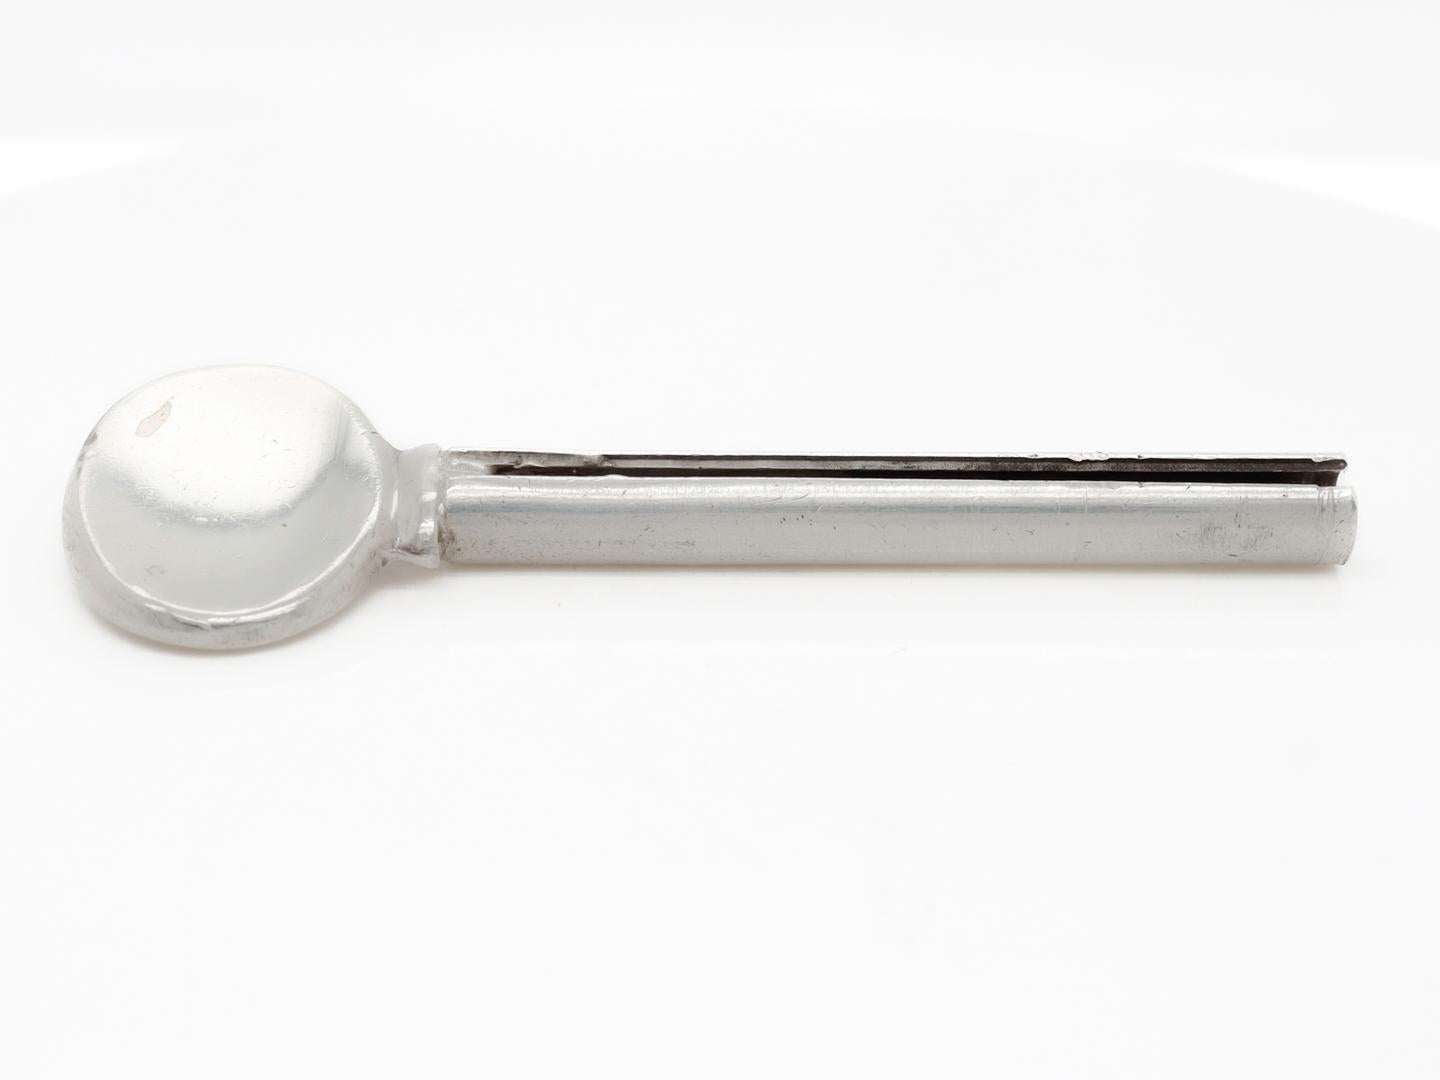 Ein feiner silberner Zahnpastatubenquetscher oder Schlüssel.

Von Tiffany & Co. 

Wird am Ende einer Zahnpastatube befestigt und wie ein Schlüssel gedreht, um die Zahnpasta herauszudrücken.

Auf der Rückseite markiert für Tiffany & Co. /